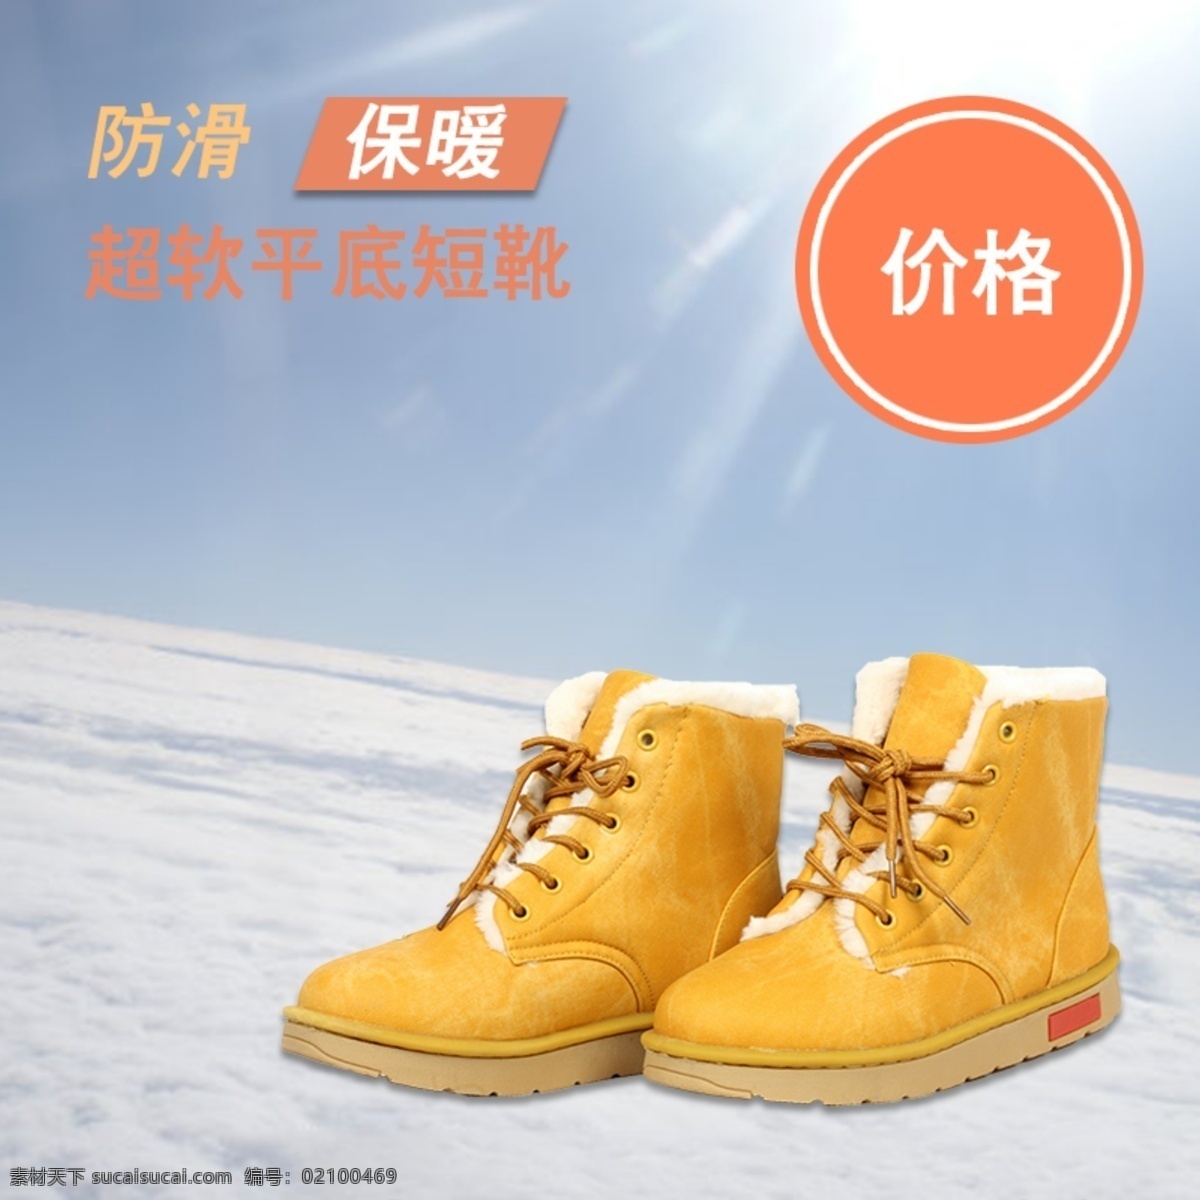 冬日 防滑 保暖 超 软 平底 短靴 主 图 寒冷 超软 主图 白色